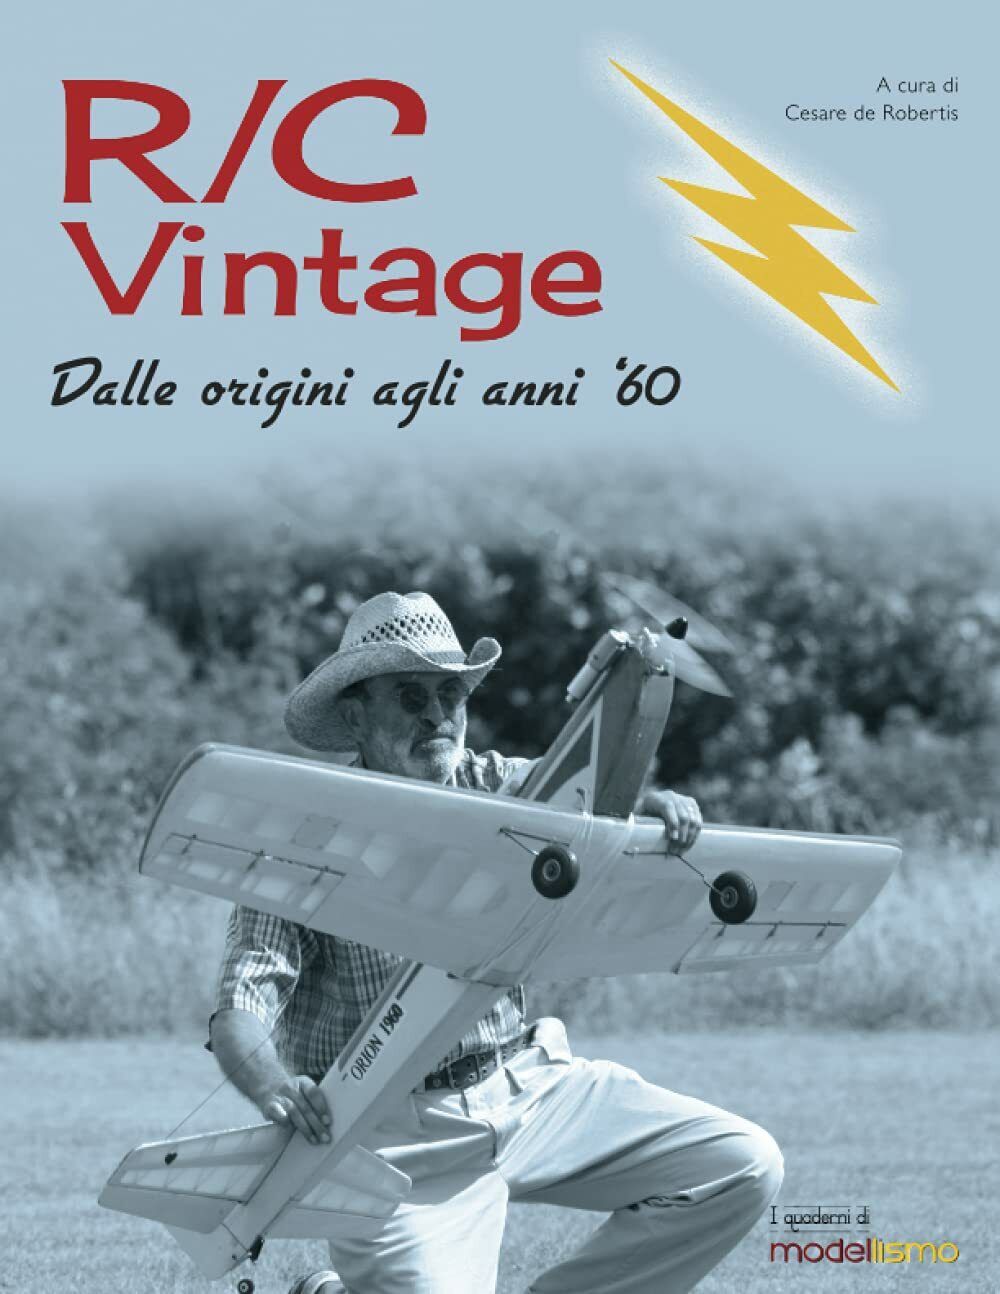 R/C Vintage: Dalle origini agli anni '60 - Cesare de Robertis - 2021